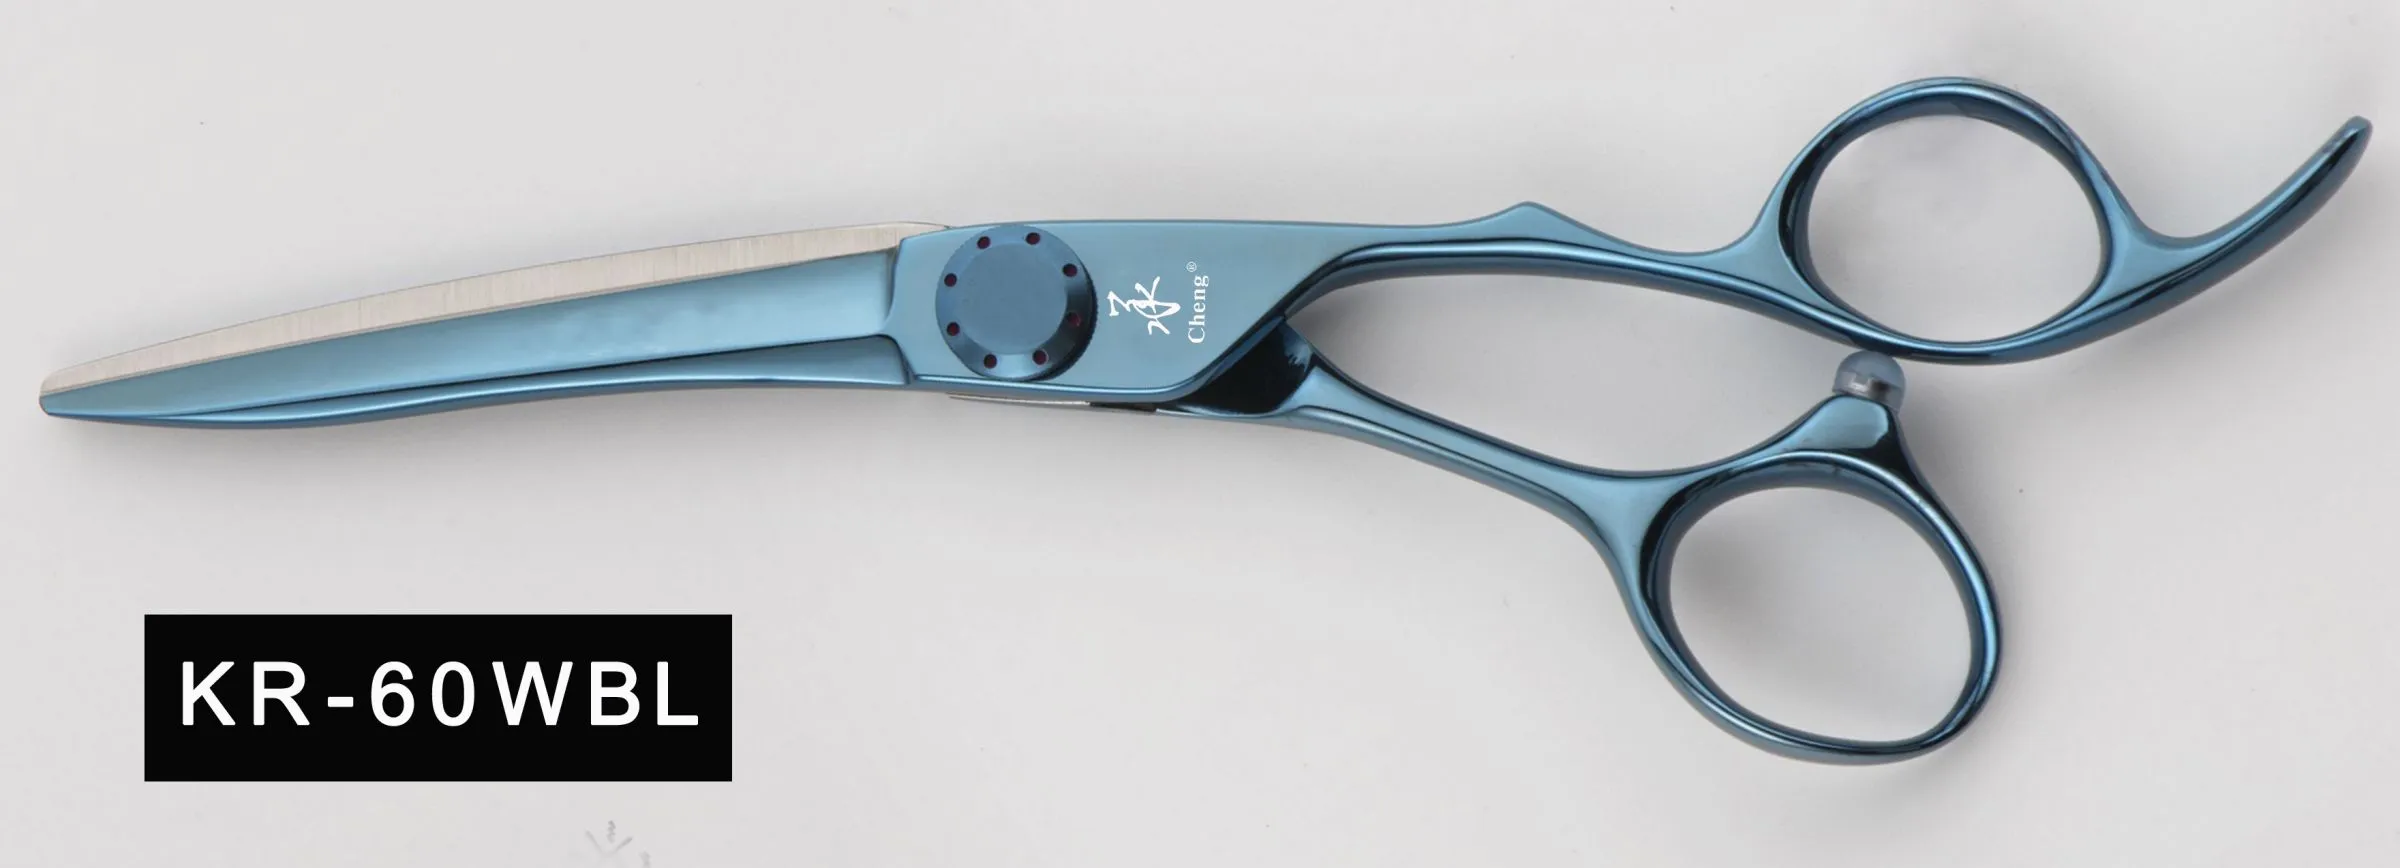 KR-60WBK Black Colour Hair Scissors 6.0Inch